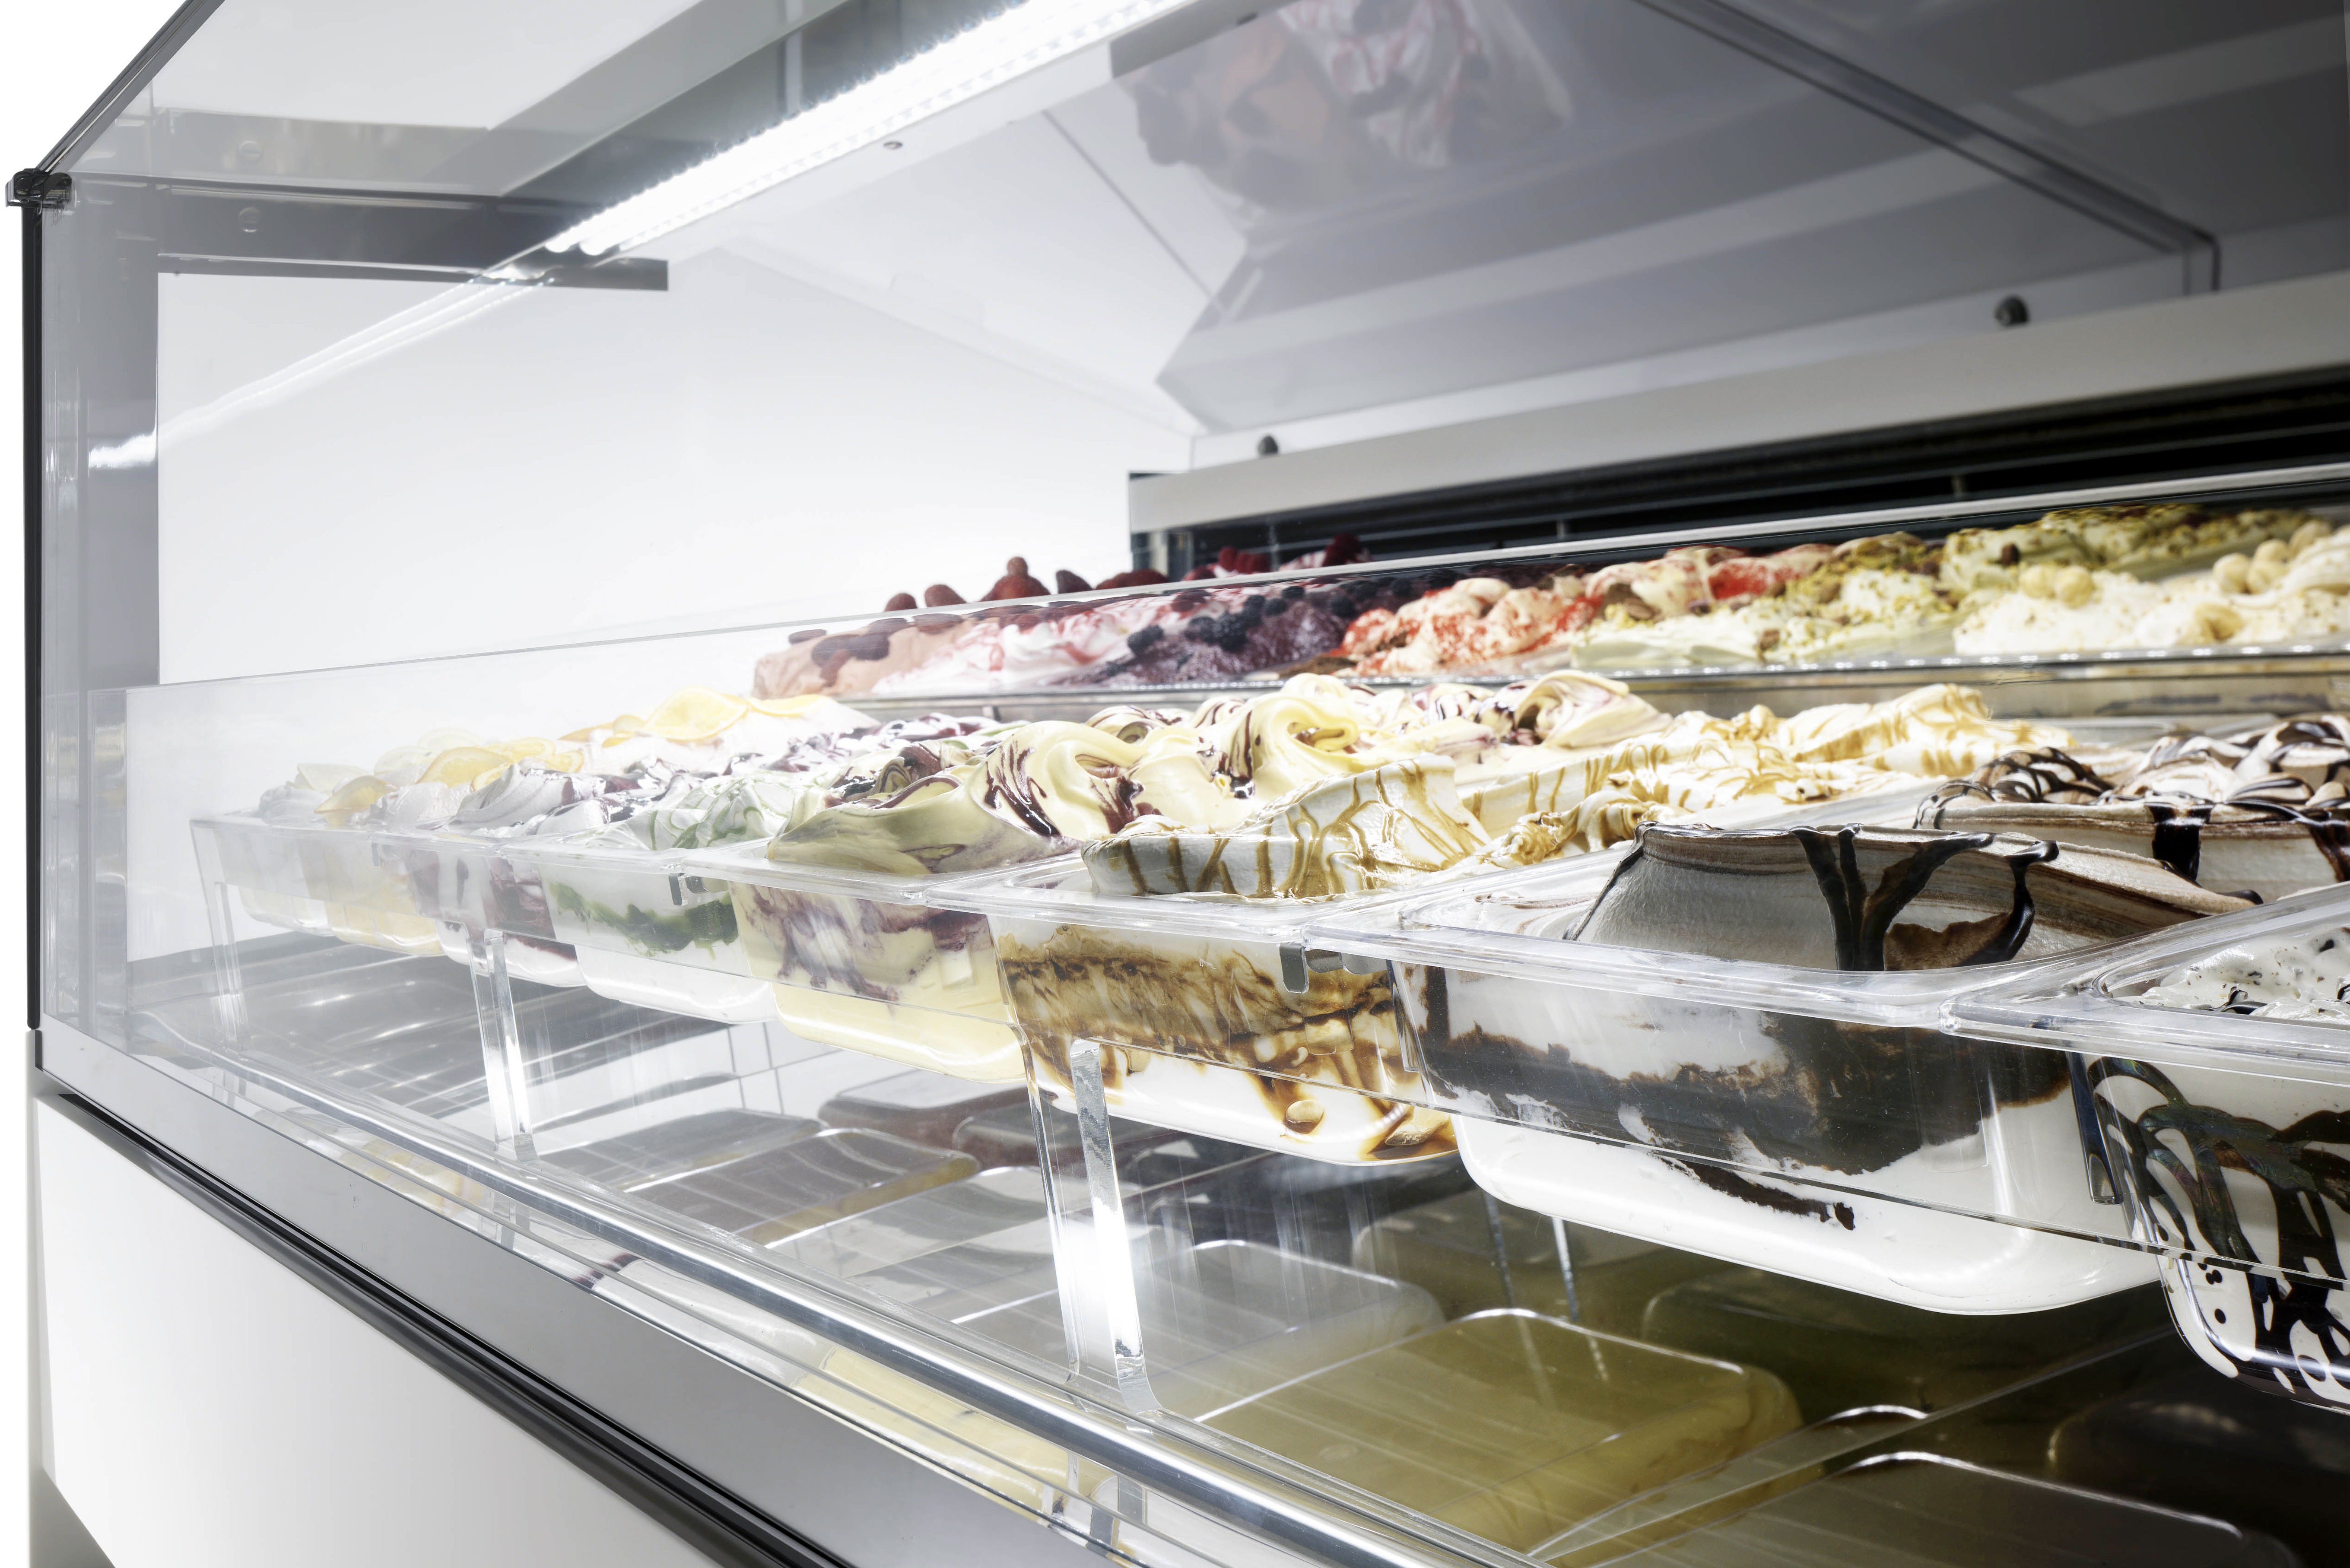 Comment conserver les glaces artisanales et conditionnées? | ISA